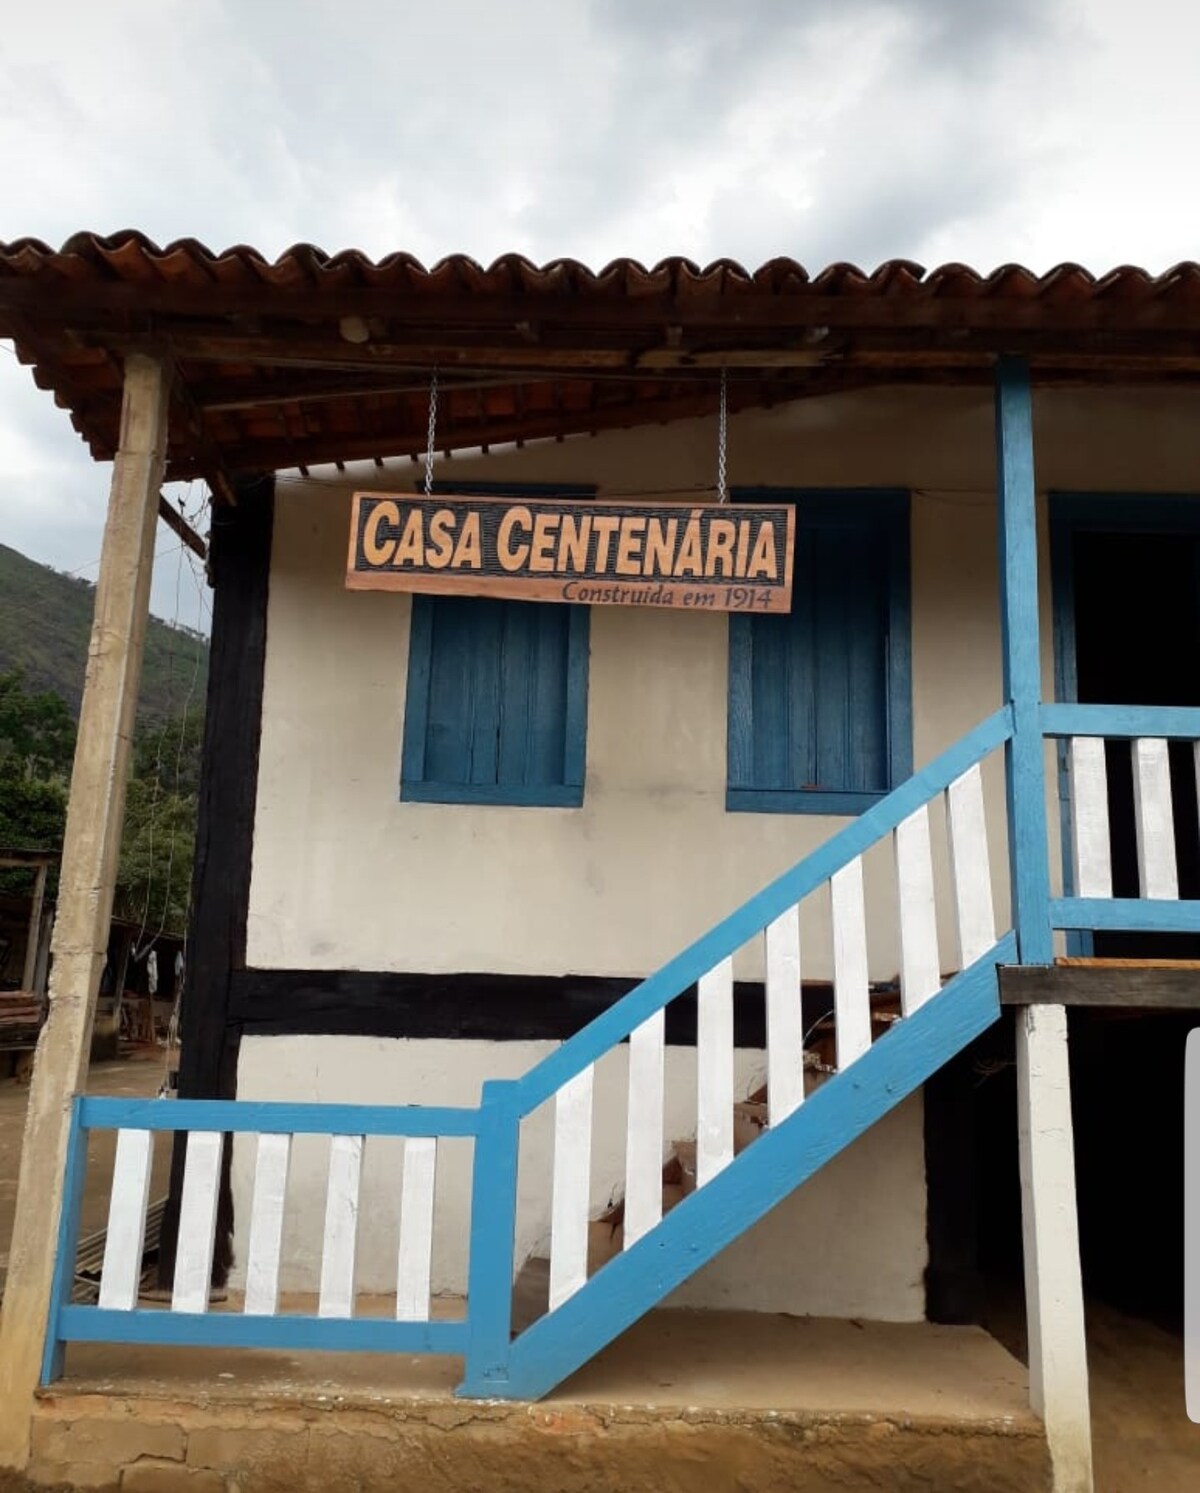 Casa de Campo Centenária